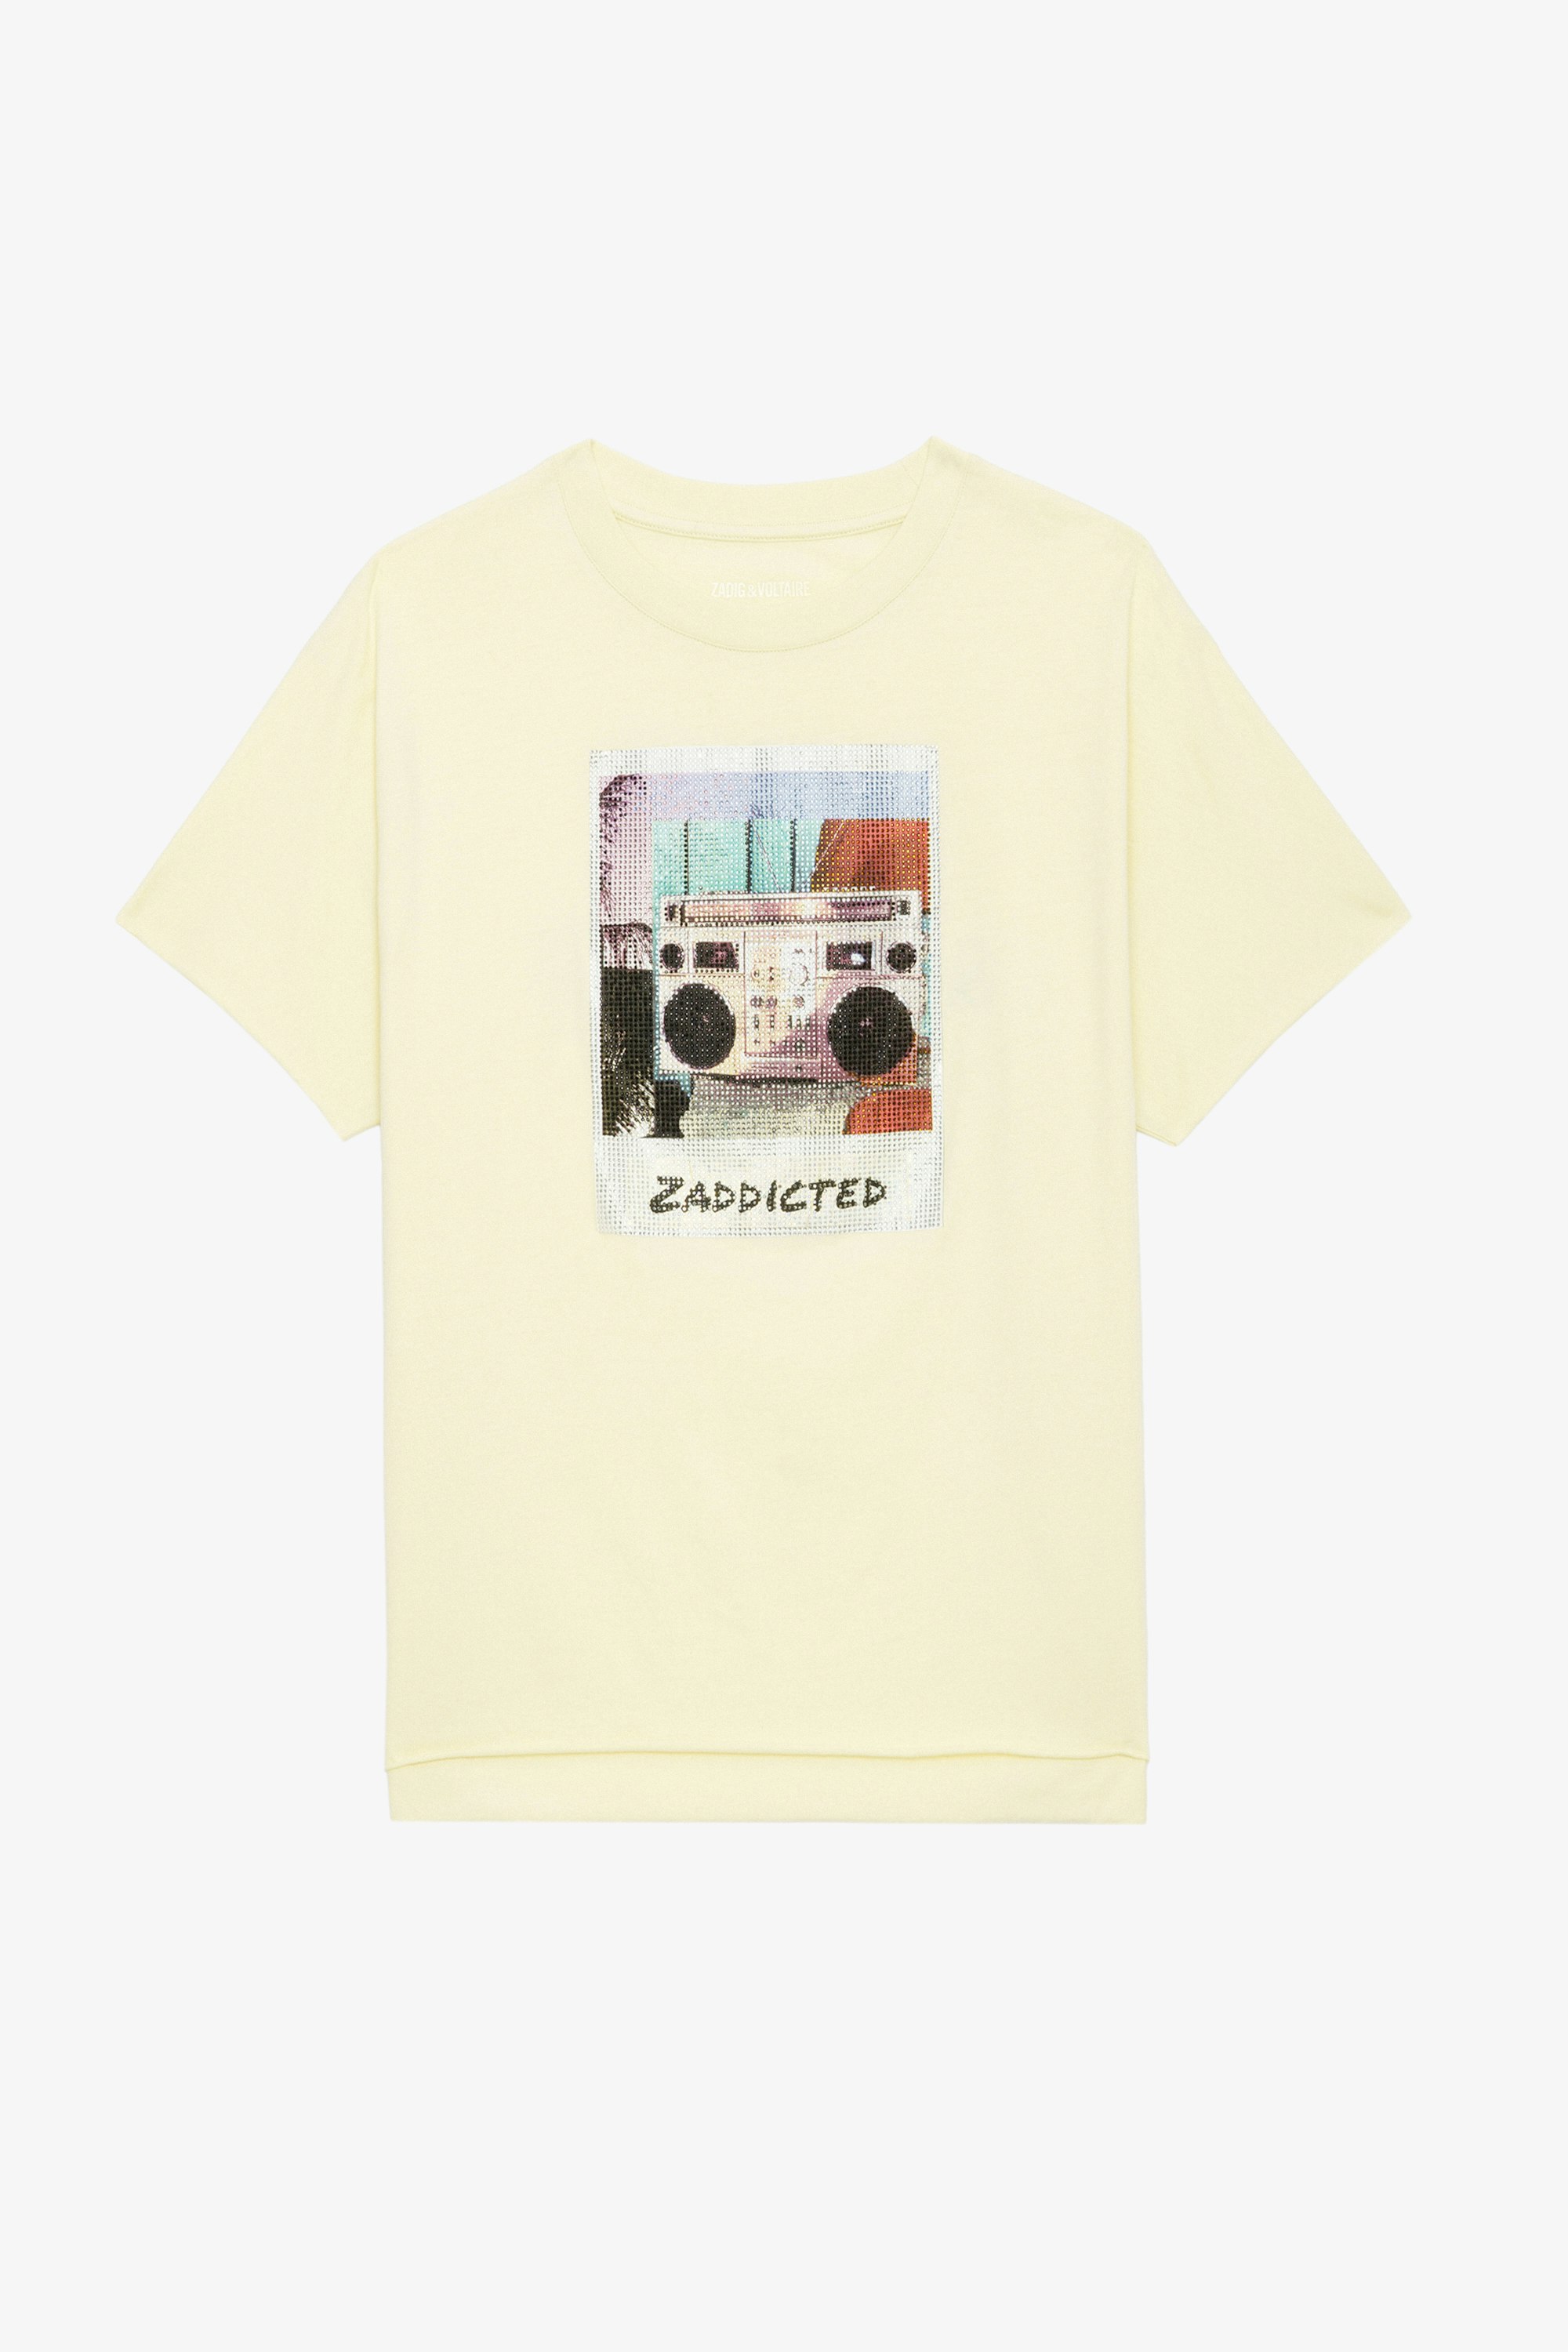 T-shirt Tommer Photoprint Strass - T-shirt en coton jaune clair à manches courtes et imprimé photoprint Ghetto Blaster à strass.